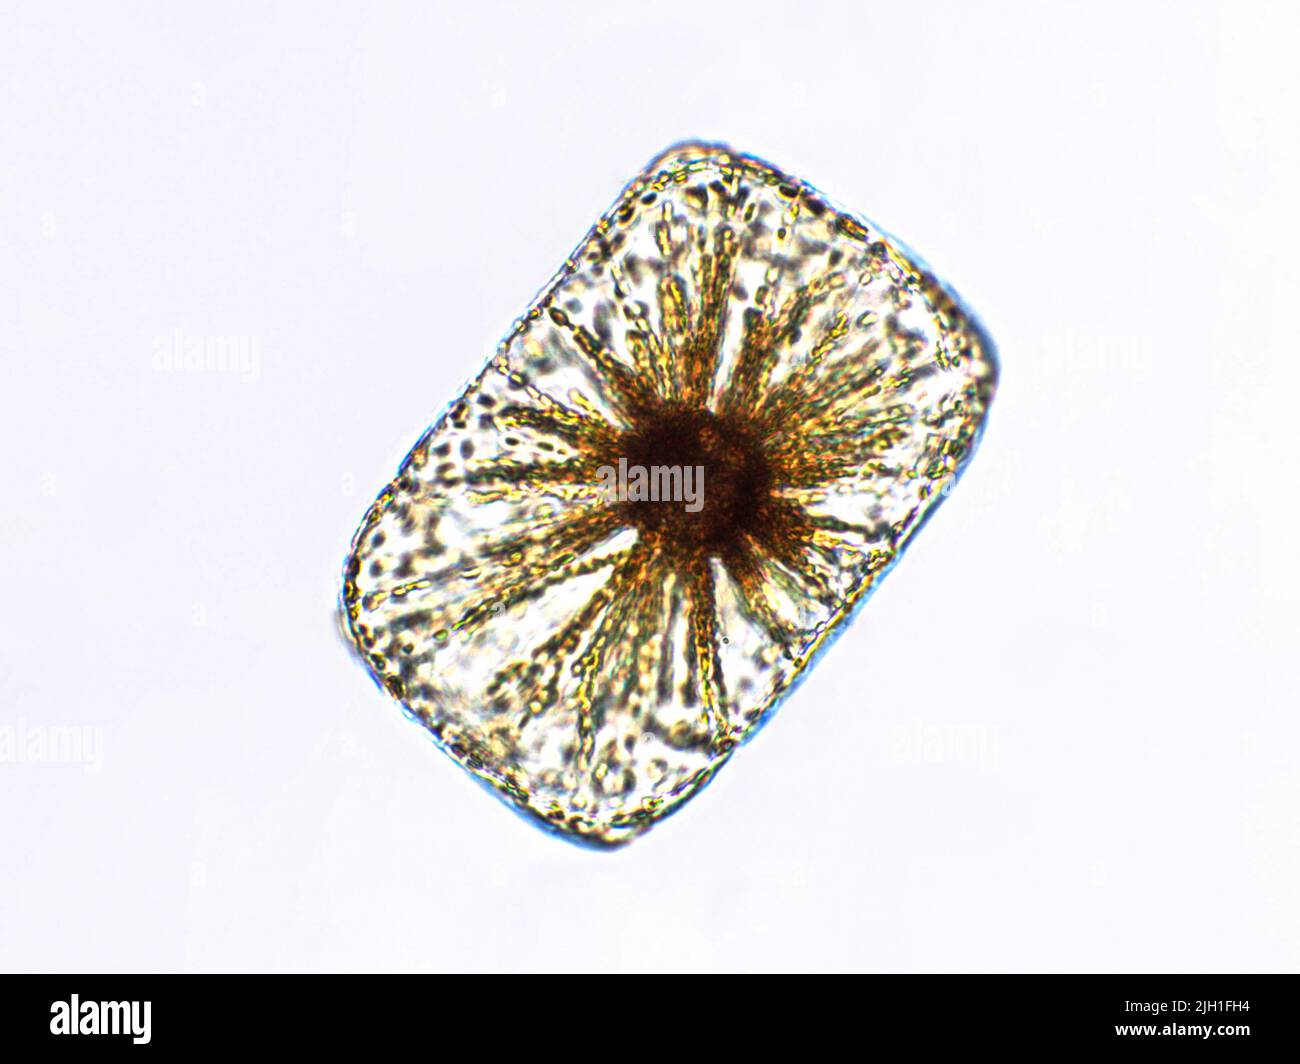 Algae under microscopic view Stock Photo